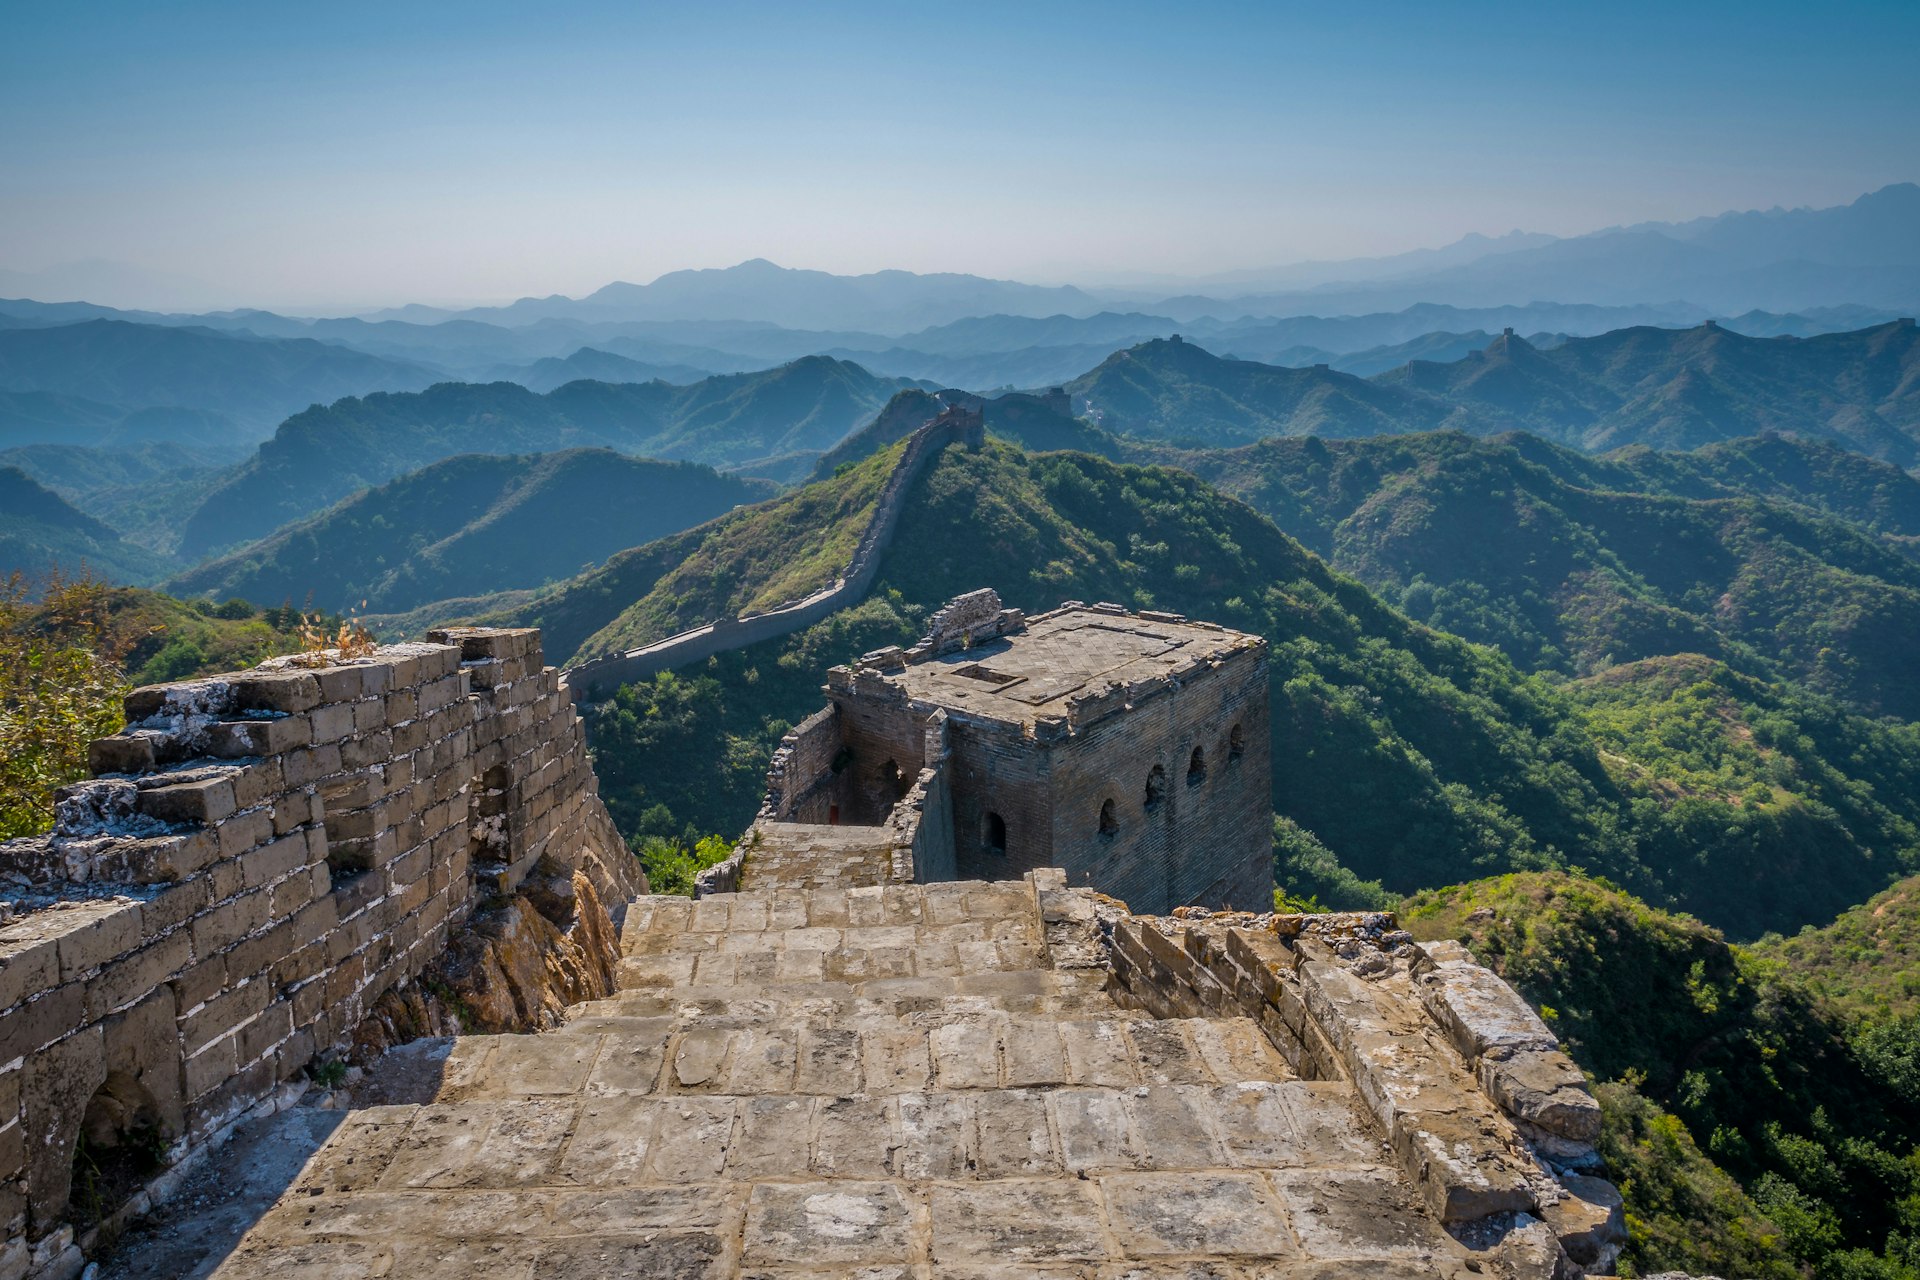 Jinshanling Great Wall, Hebei Province, China